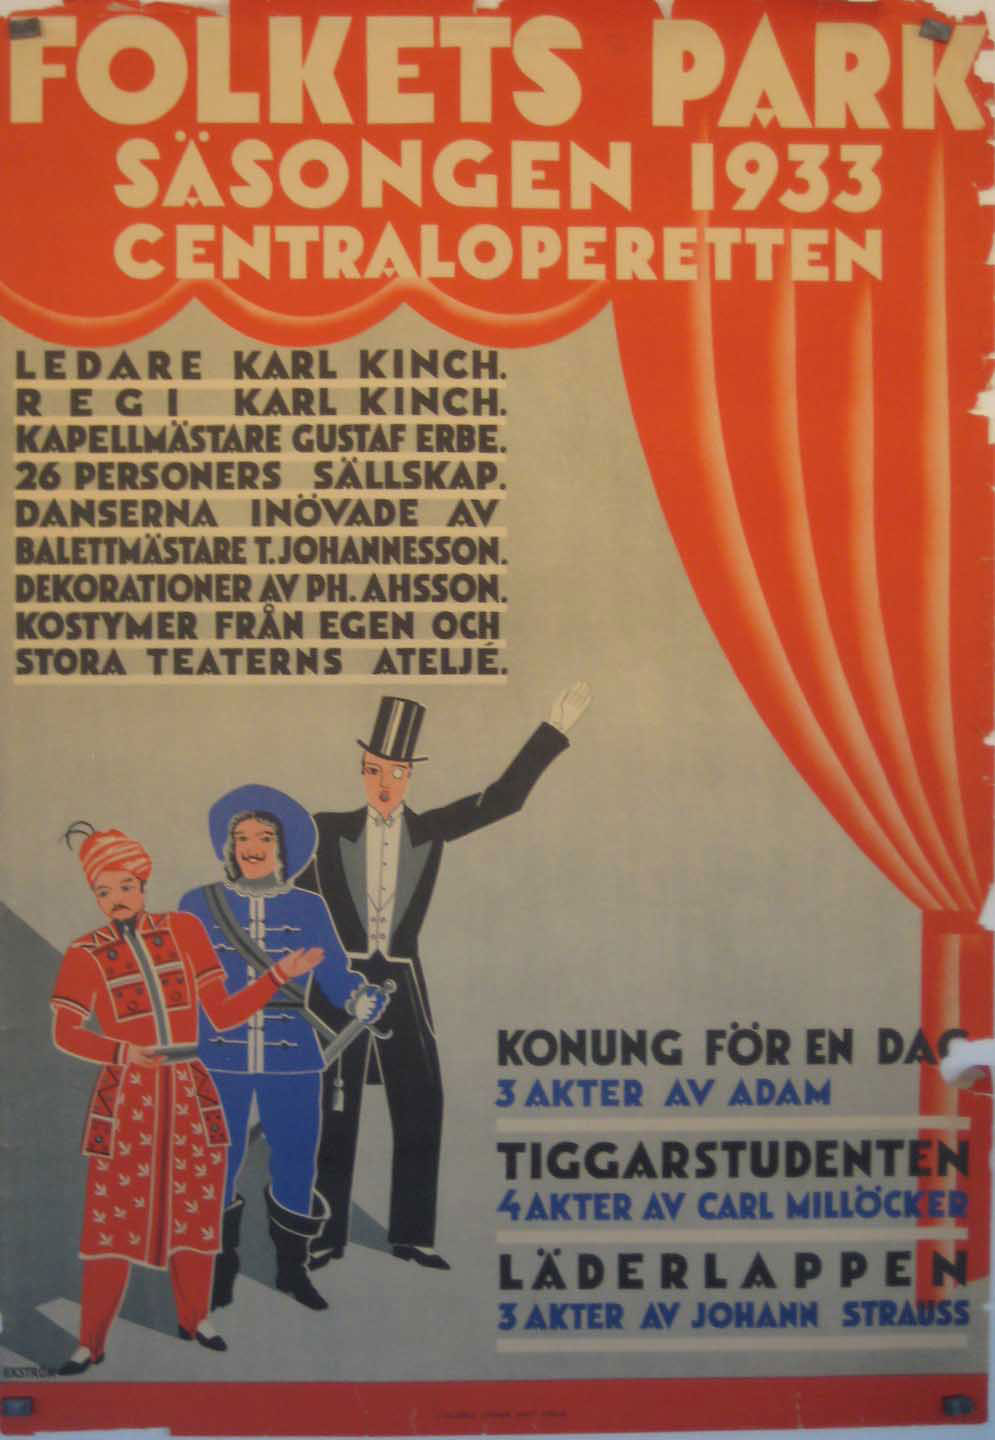 FOLKETS PARK SASONGEN 1933